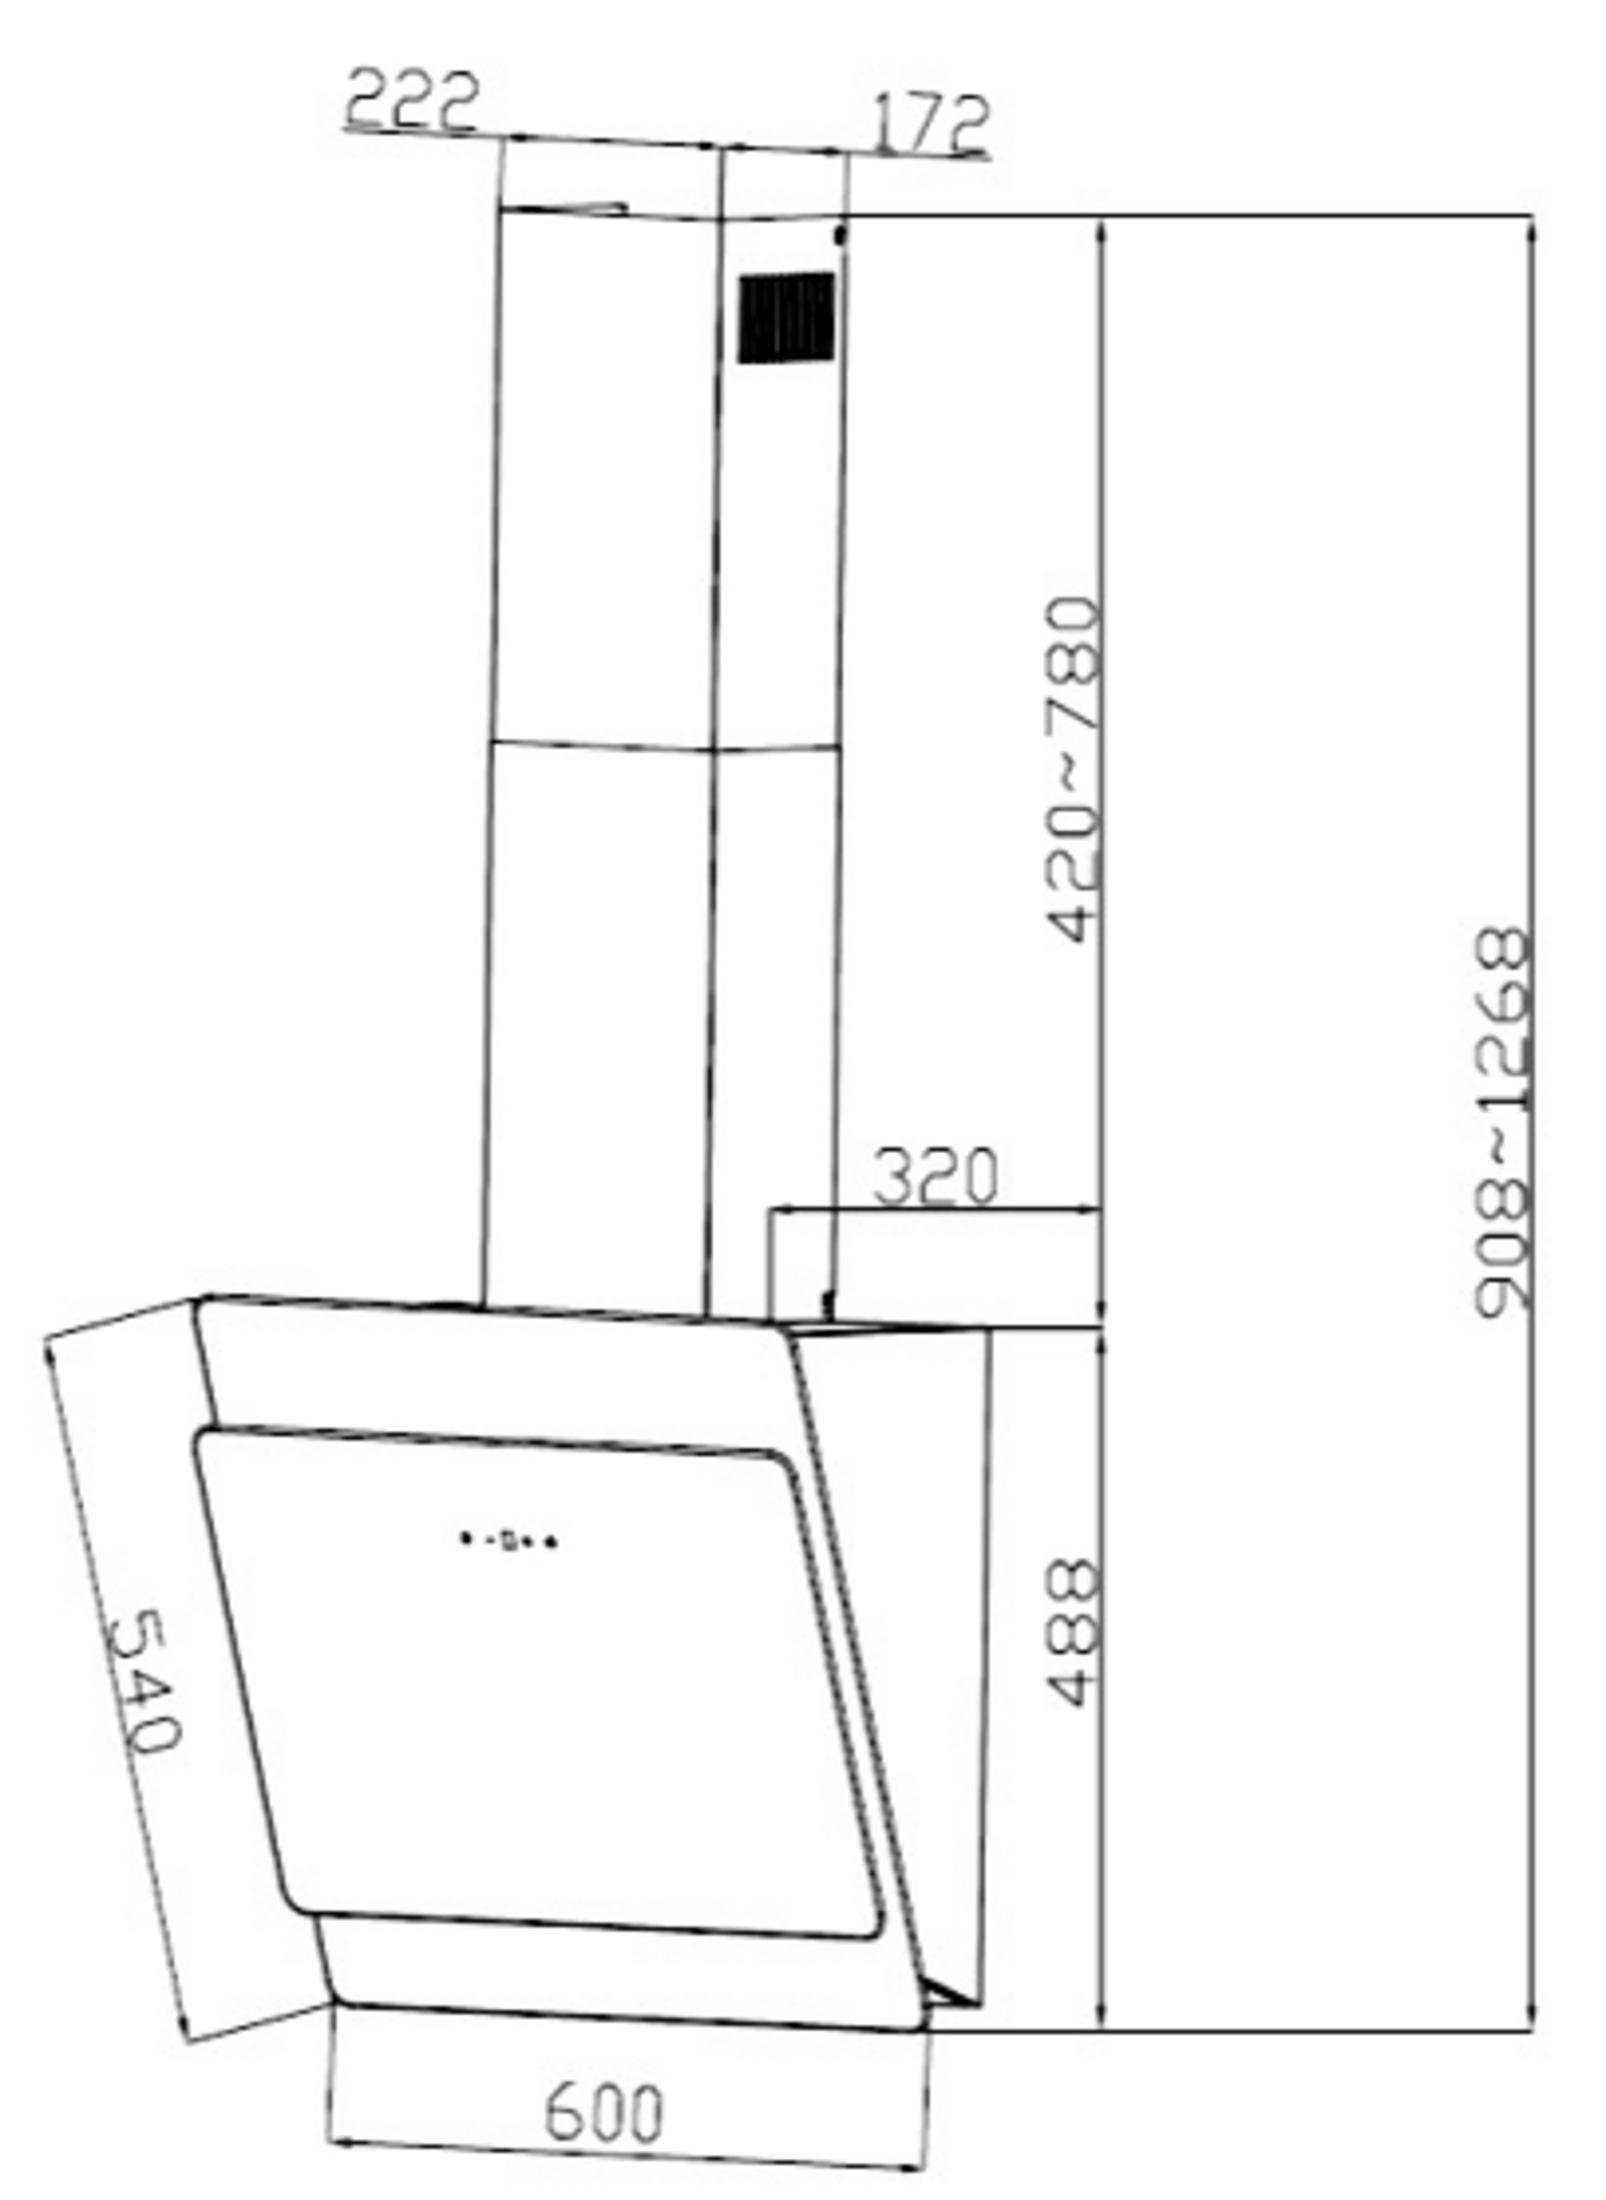 320 ABTZ, PKM S3-60 breit, tief) mm mm Dunstabzugshaube (600